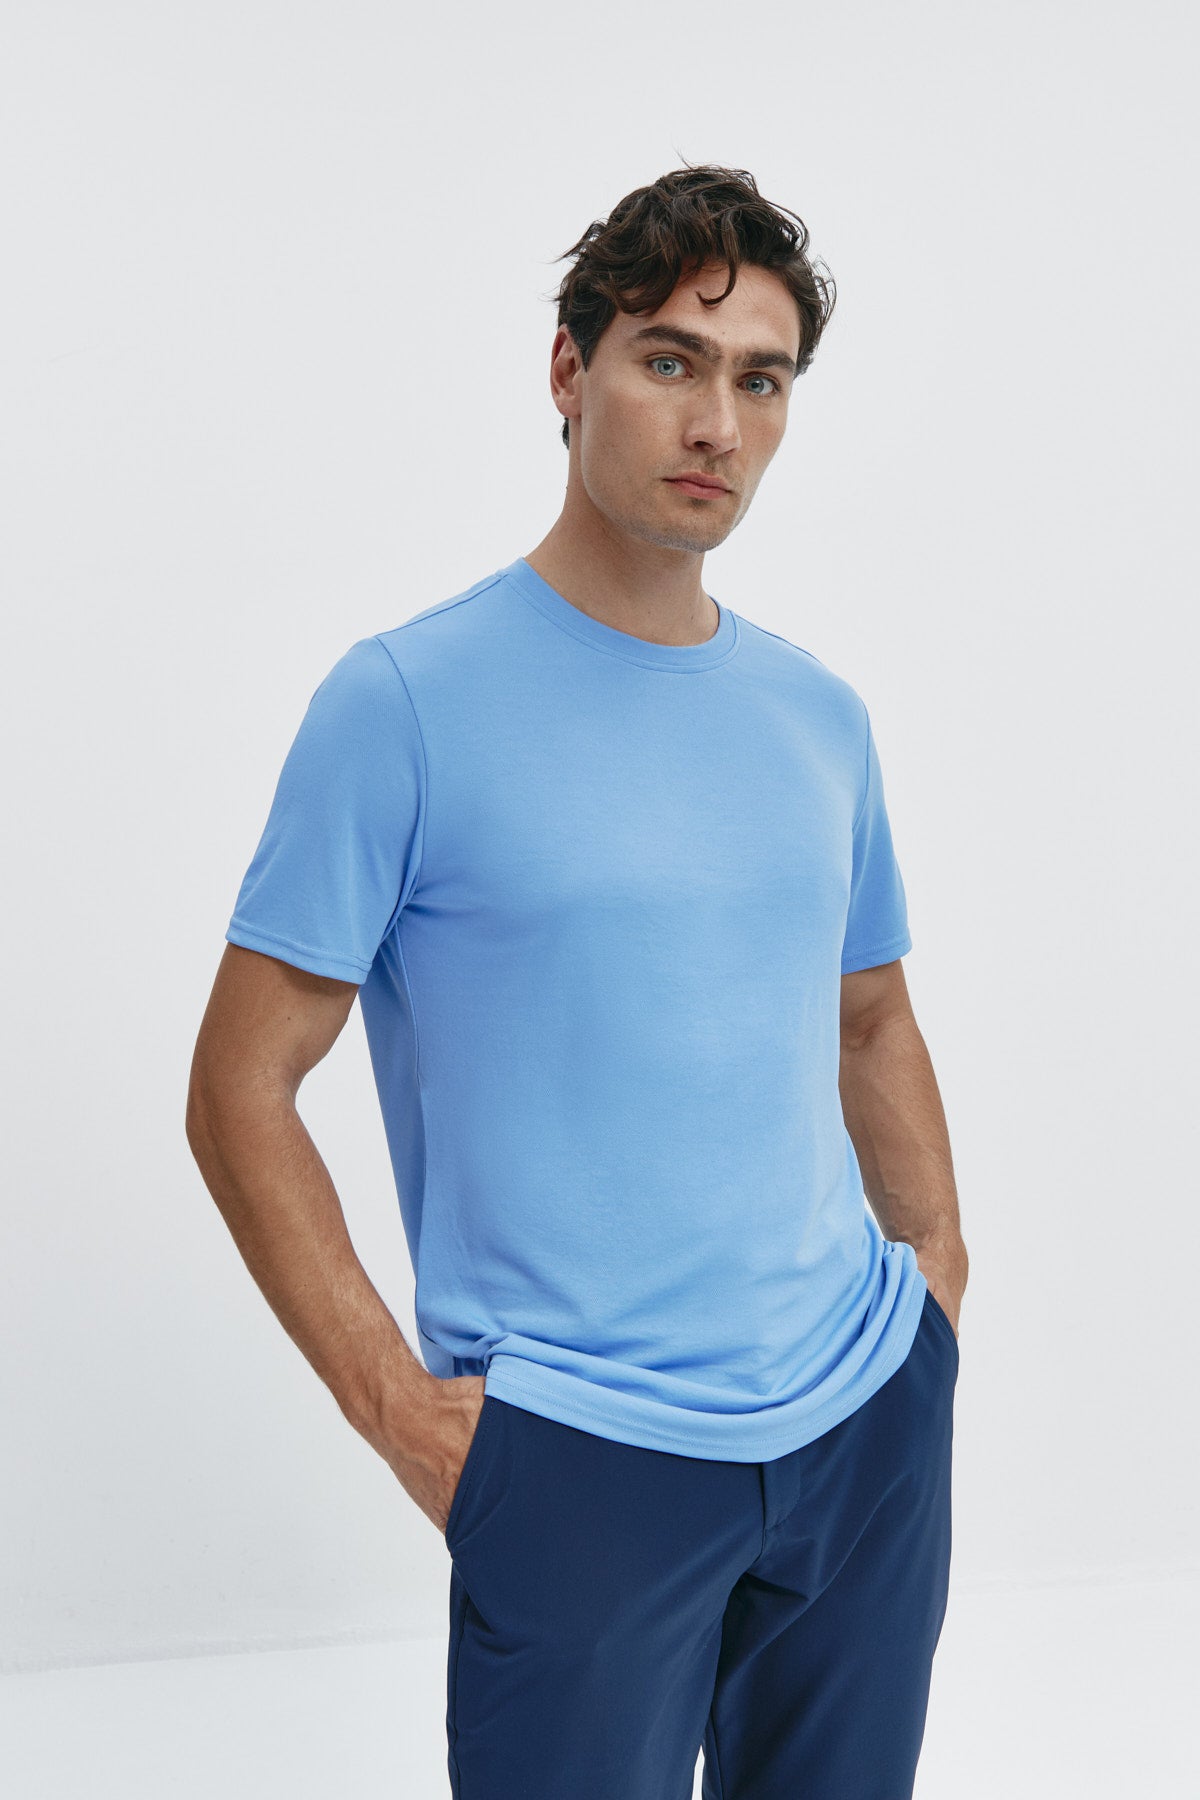 Camiseta de hombre en azul atlas de Sepiia, estilo y comodidad en una prenda duradera. Foto frente